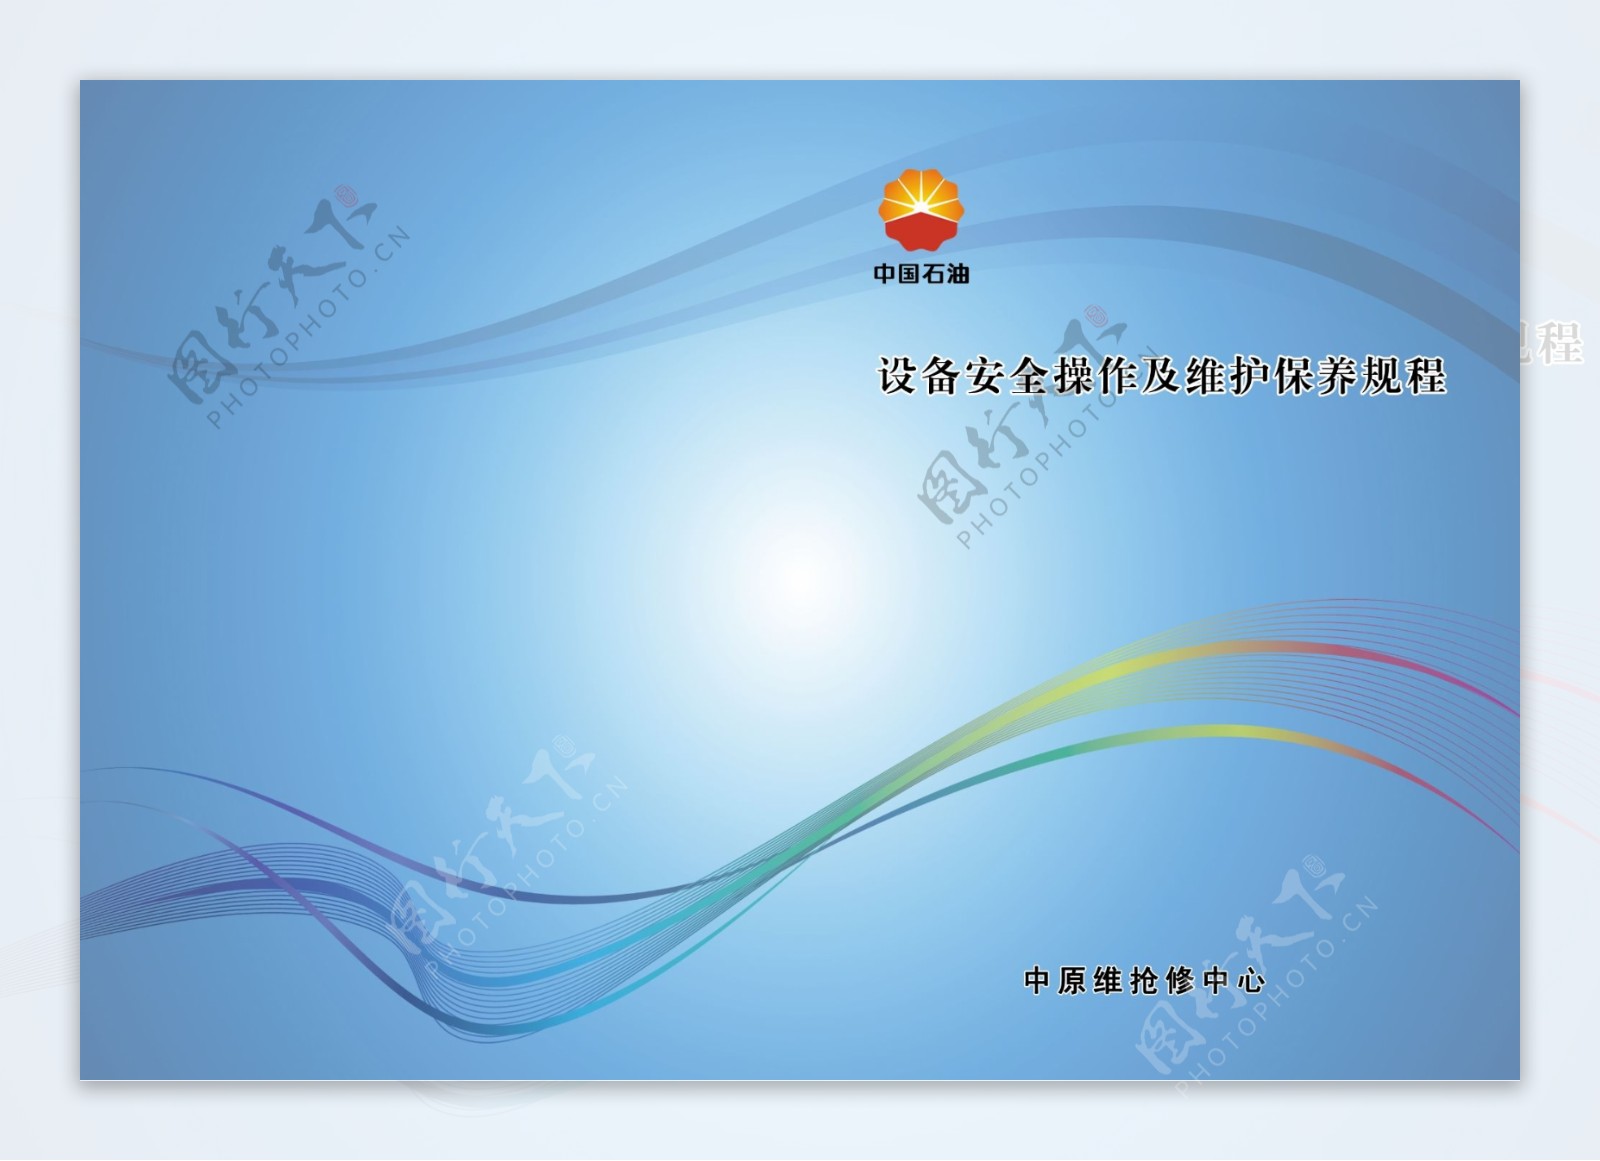 中国石油宣传册封面图片